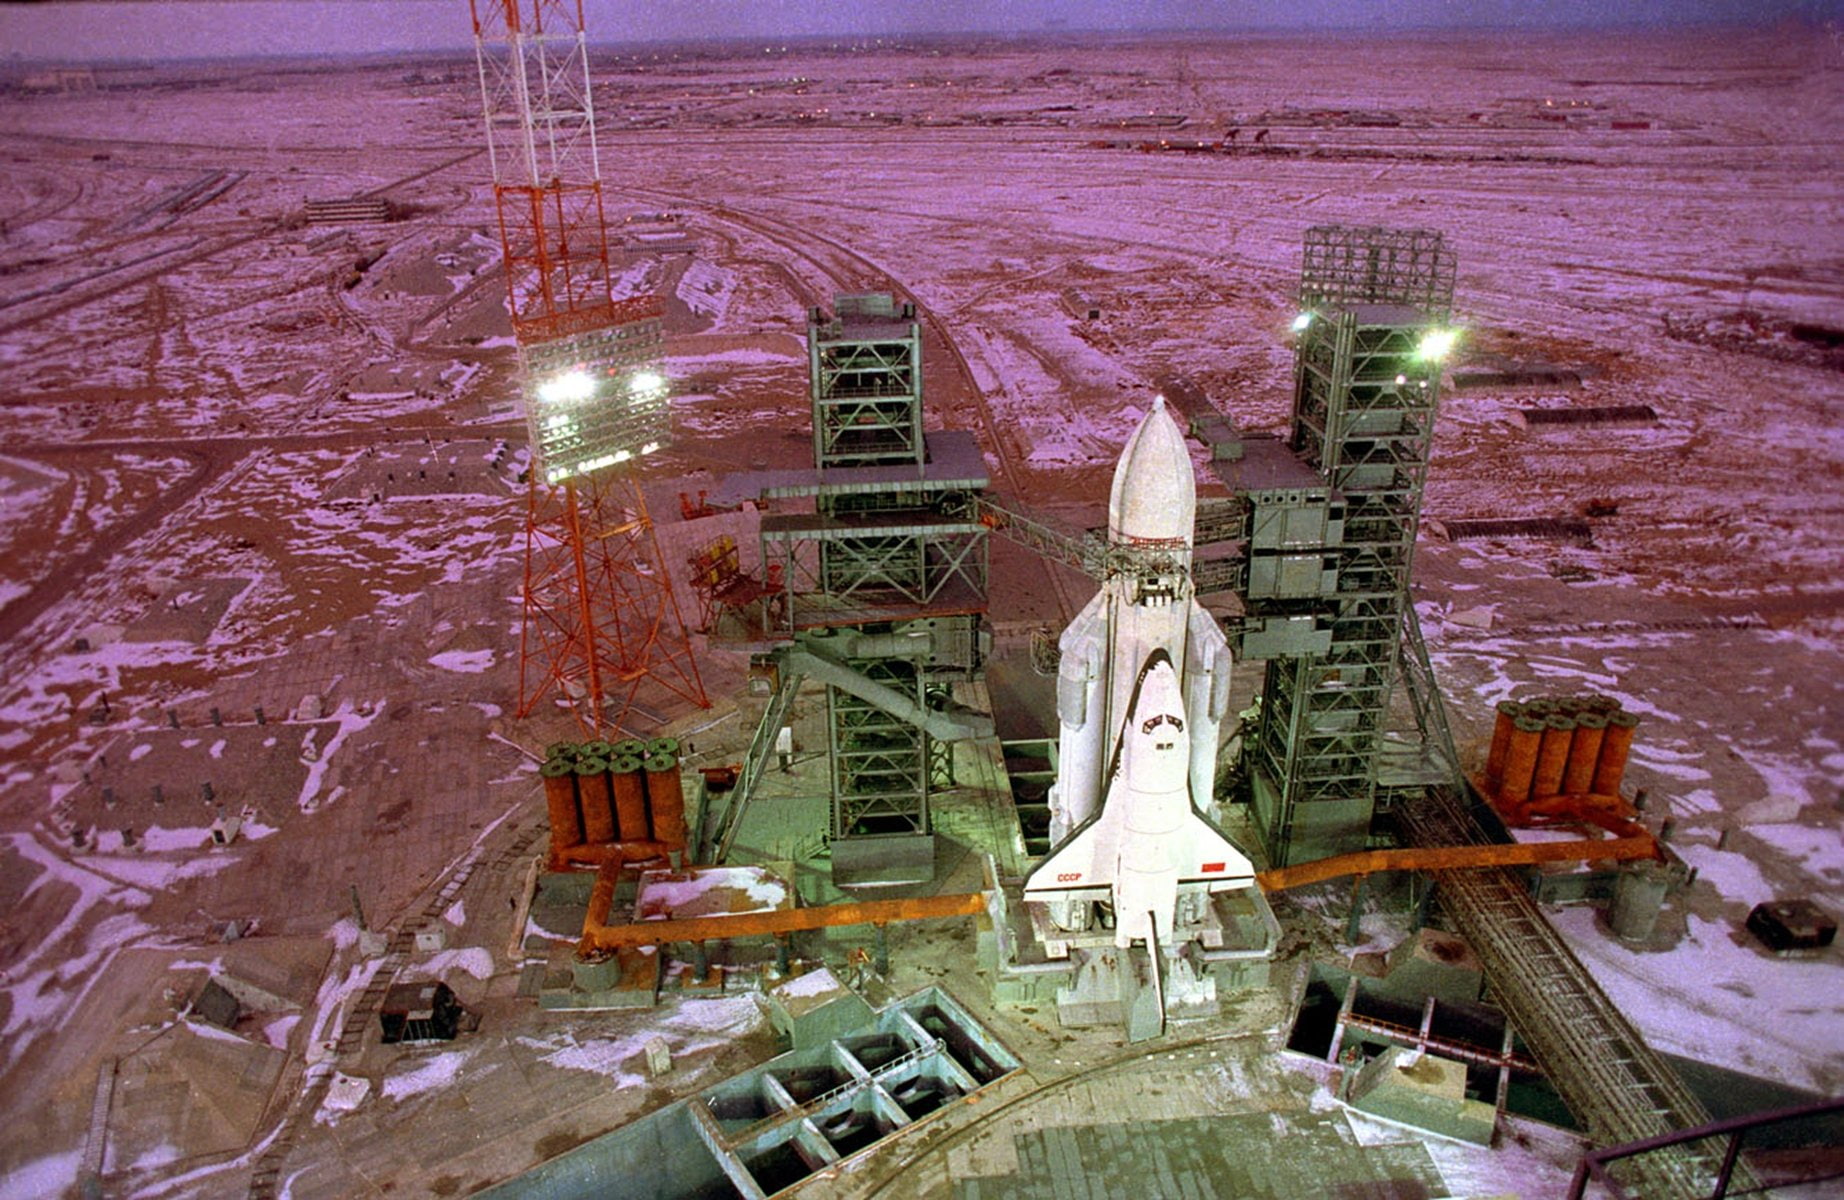 base, buran, cccp, launching, russian, shuttle, soviet, space